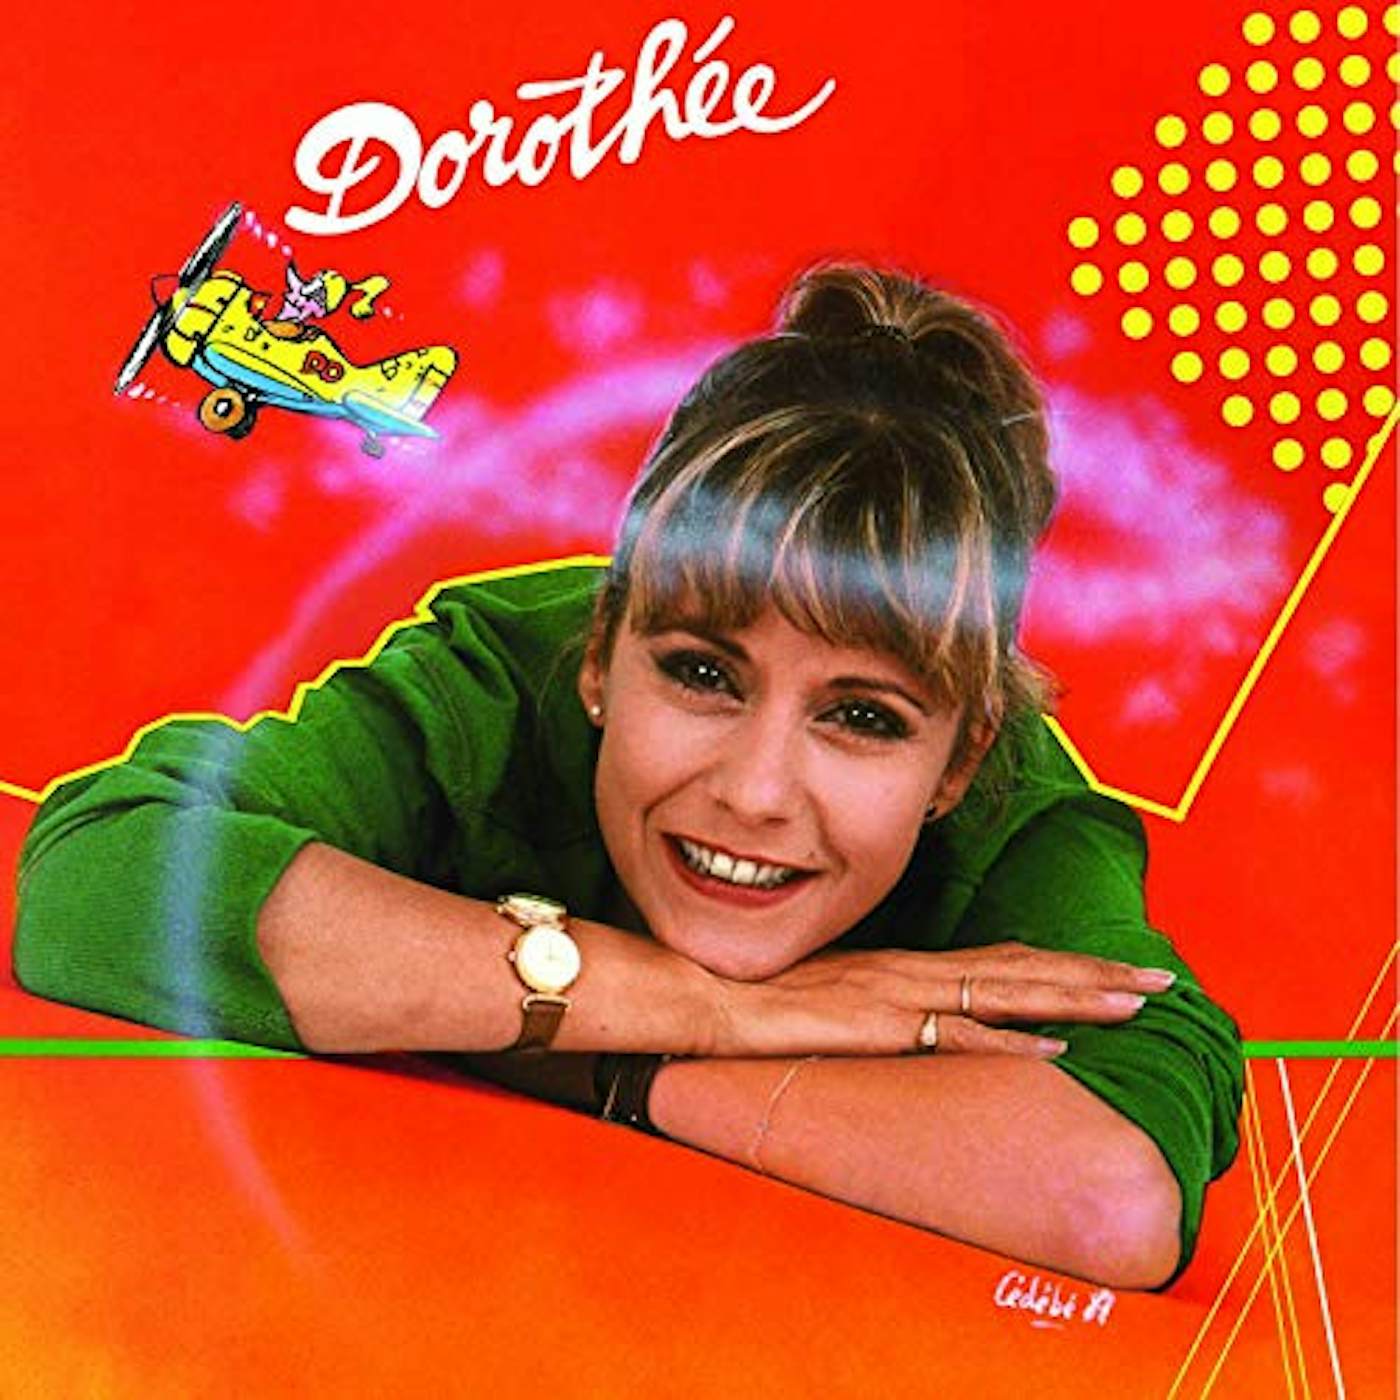 Dorothee Docteur Vinyl Record